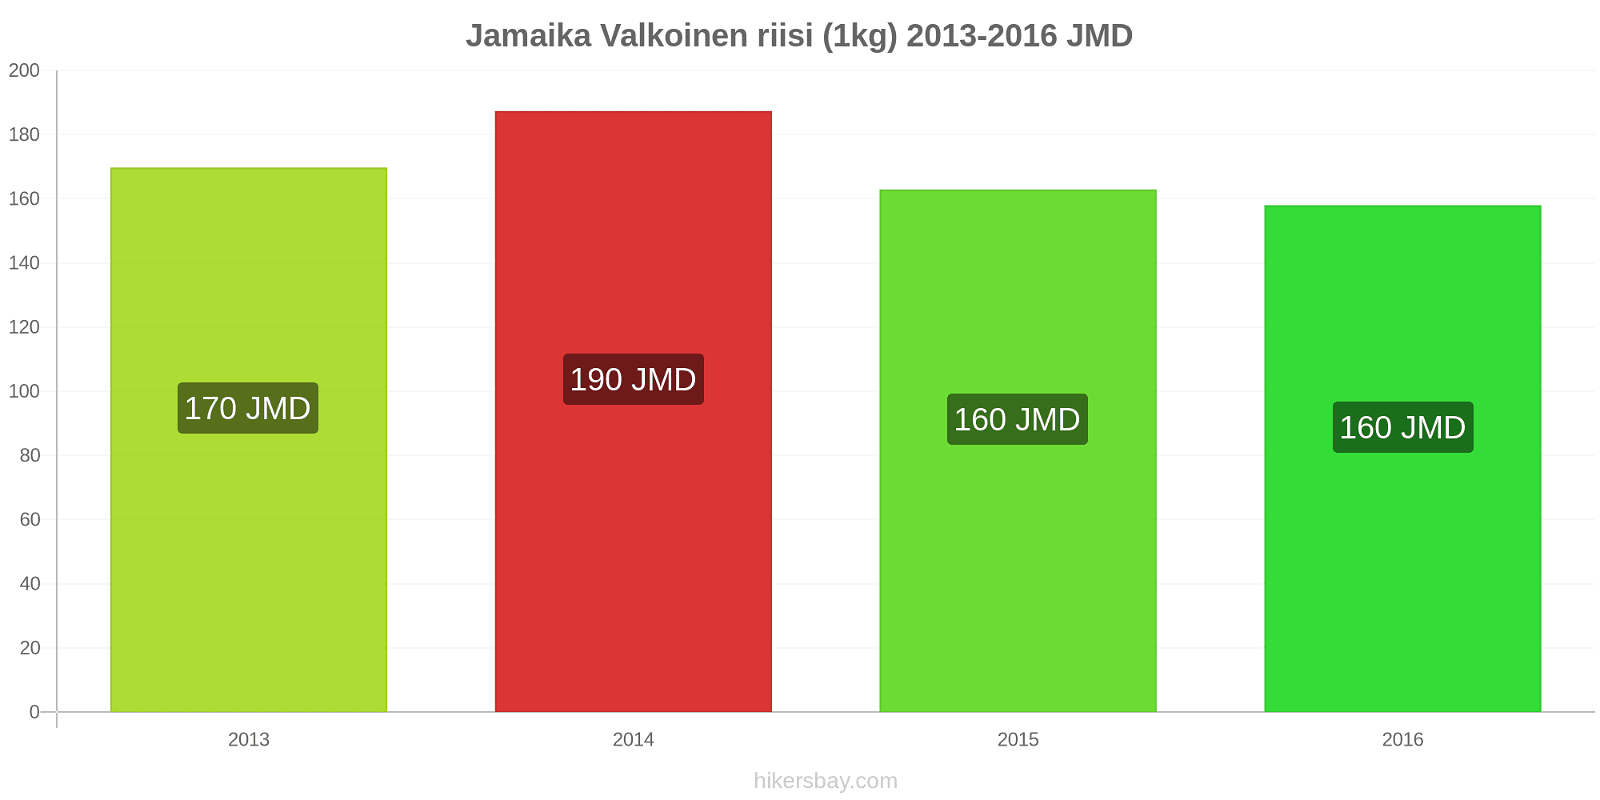 Jamaika hintojen muutokset Valkoinen riisi (1kg) hikersbay.com